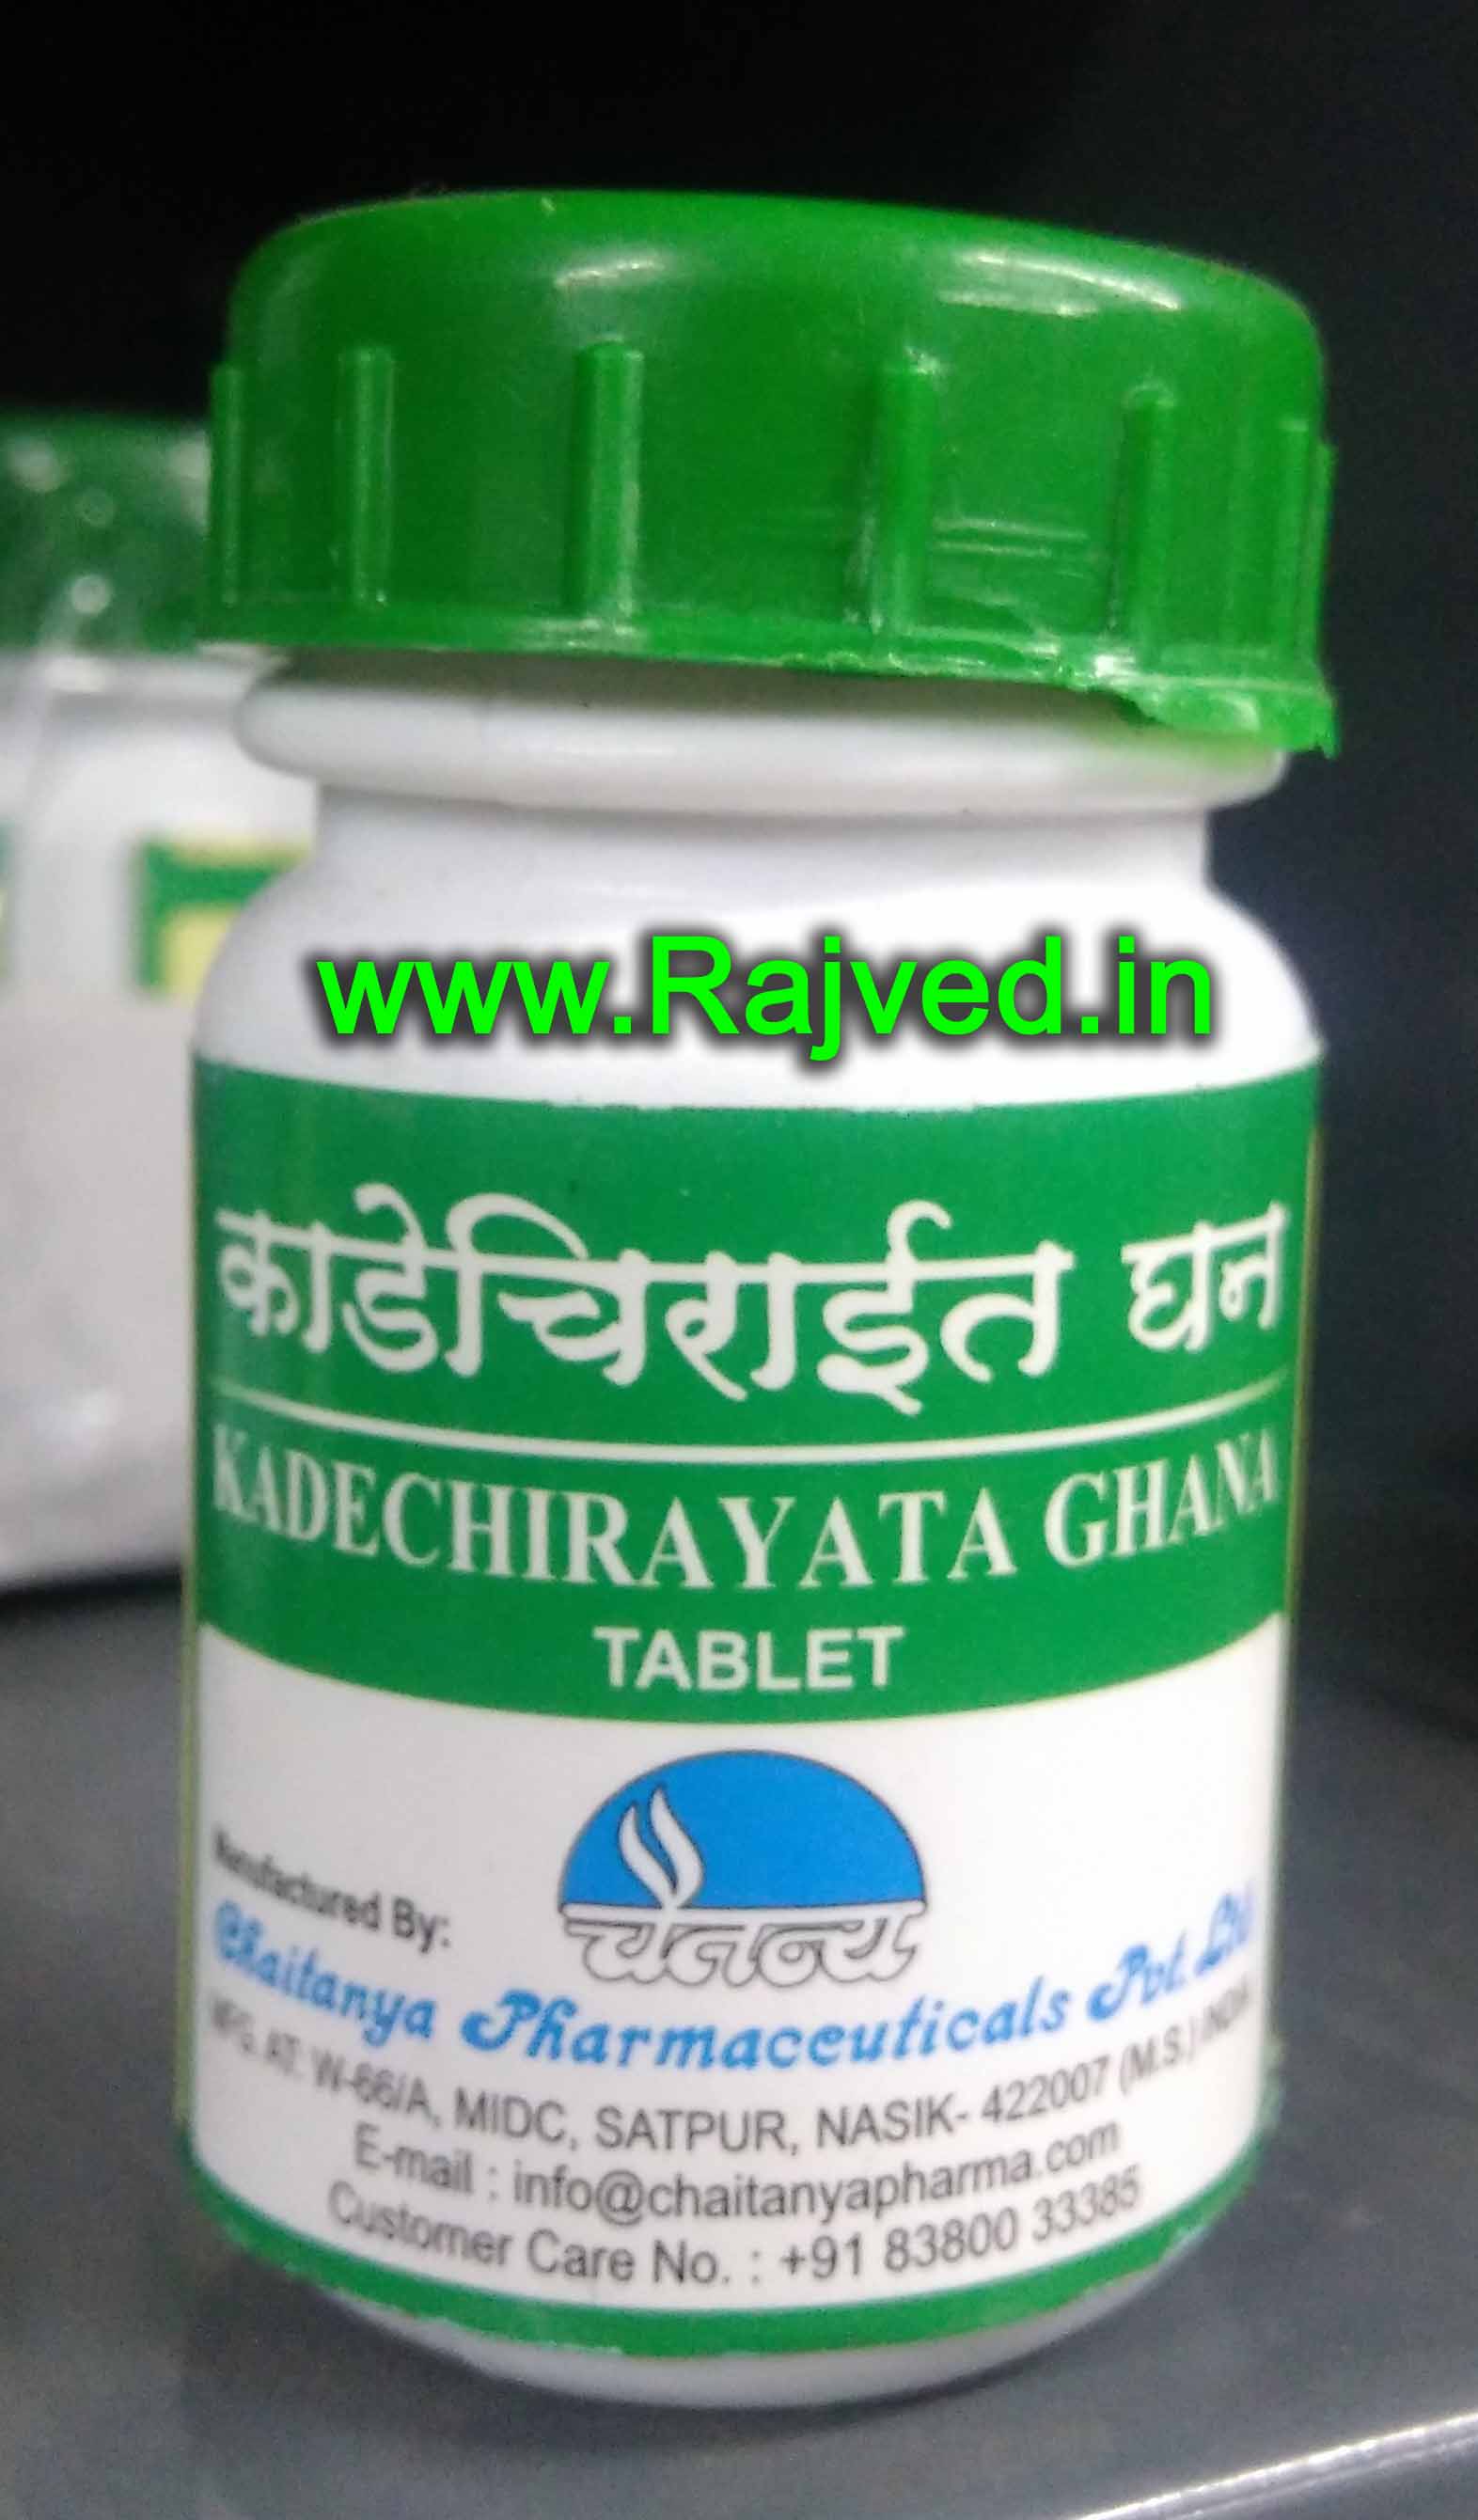 kadechirayata ghana 60tab upto 20% off chaitanya pharmaceuticals